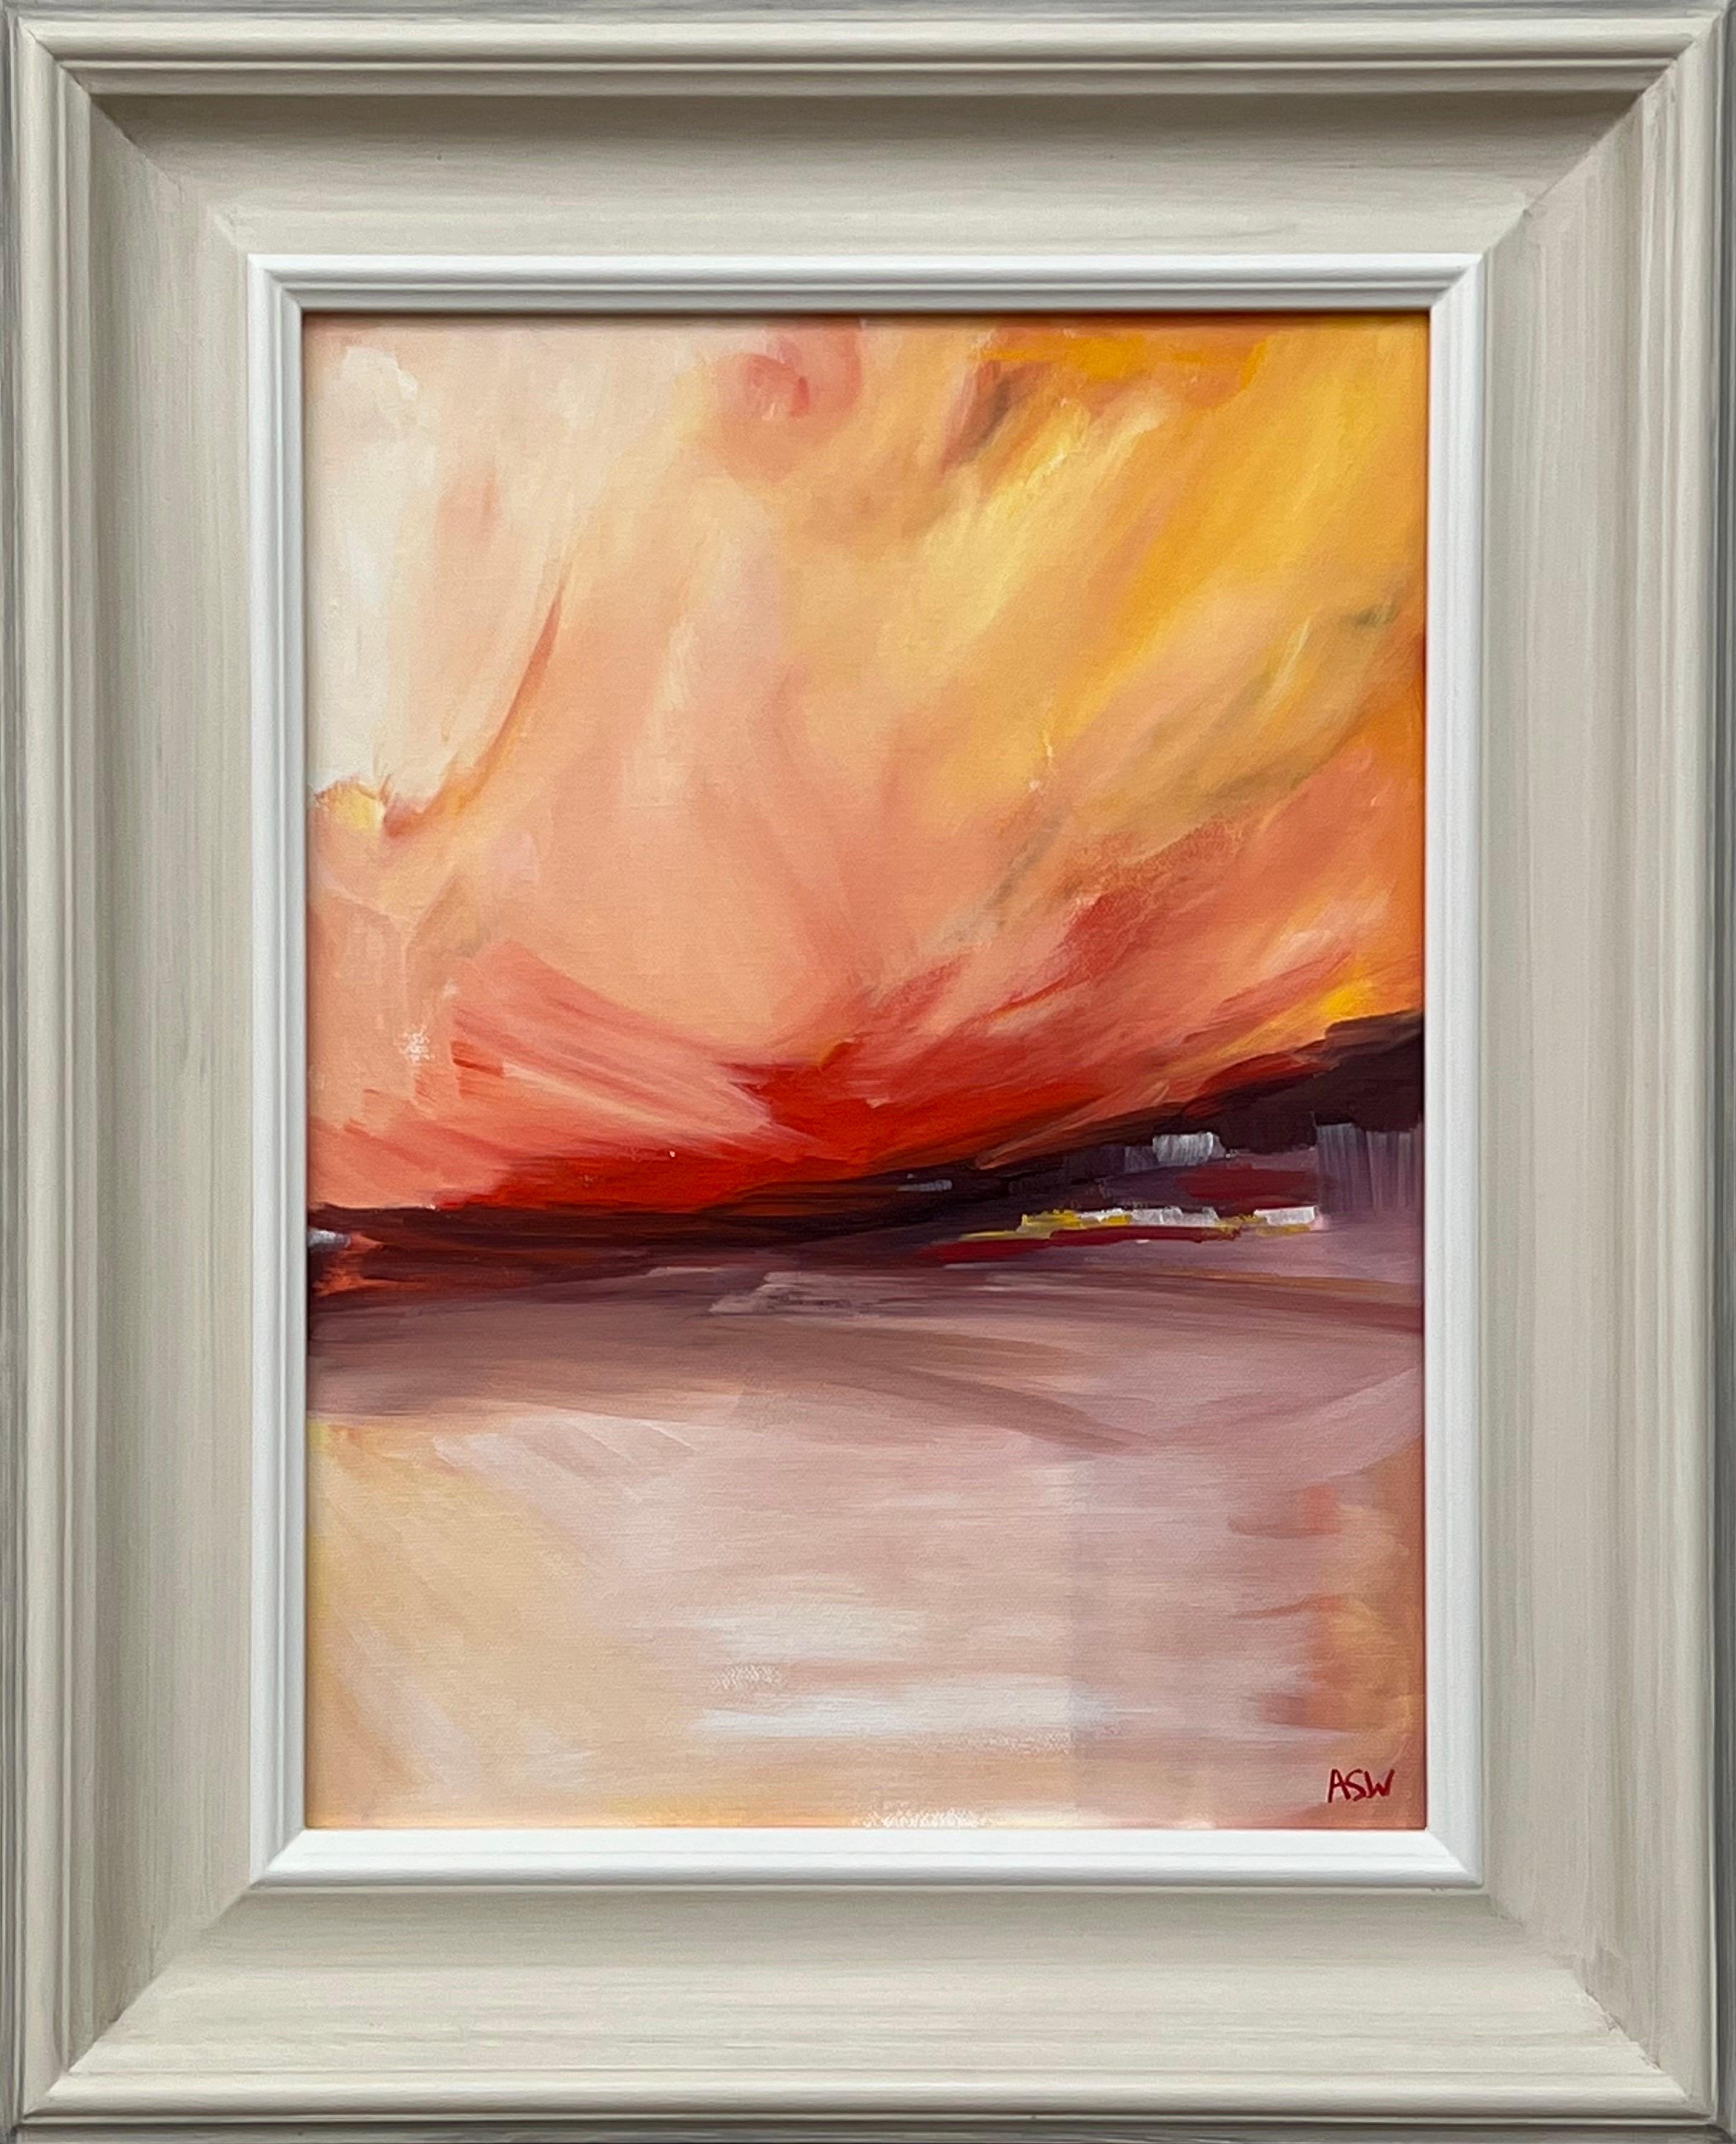 Rot-gelbe abstrakte impressionistische Landschaft eines zeitgenössischen britischen Künstlers